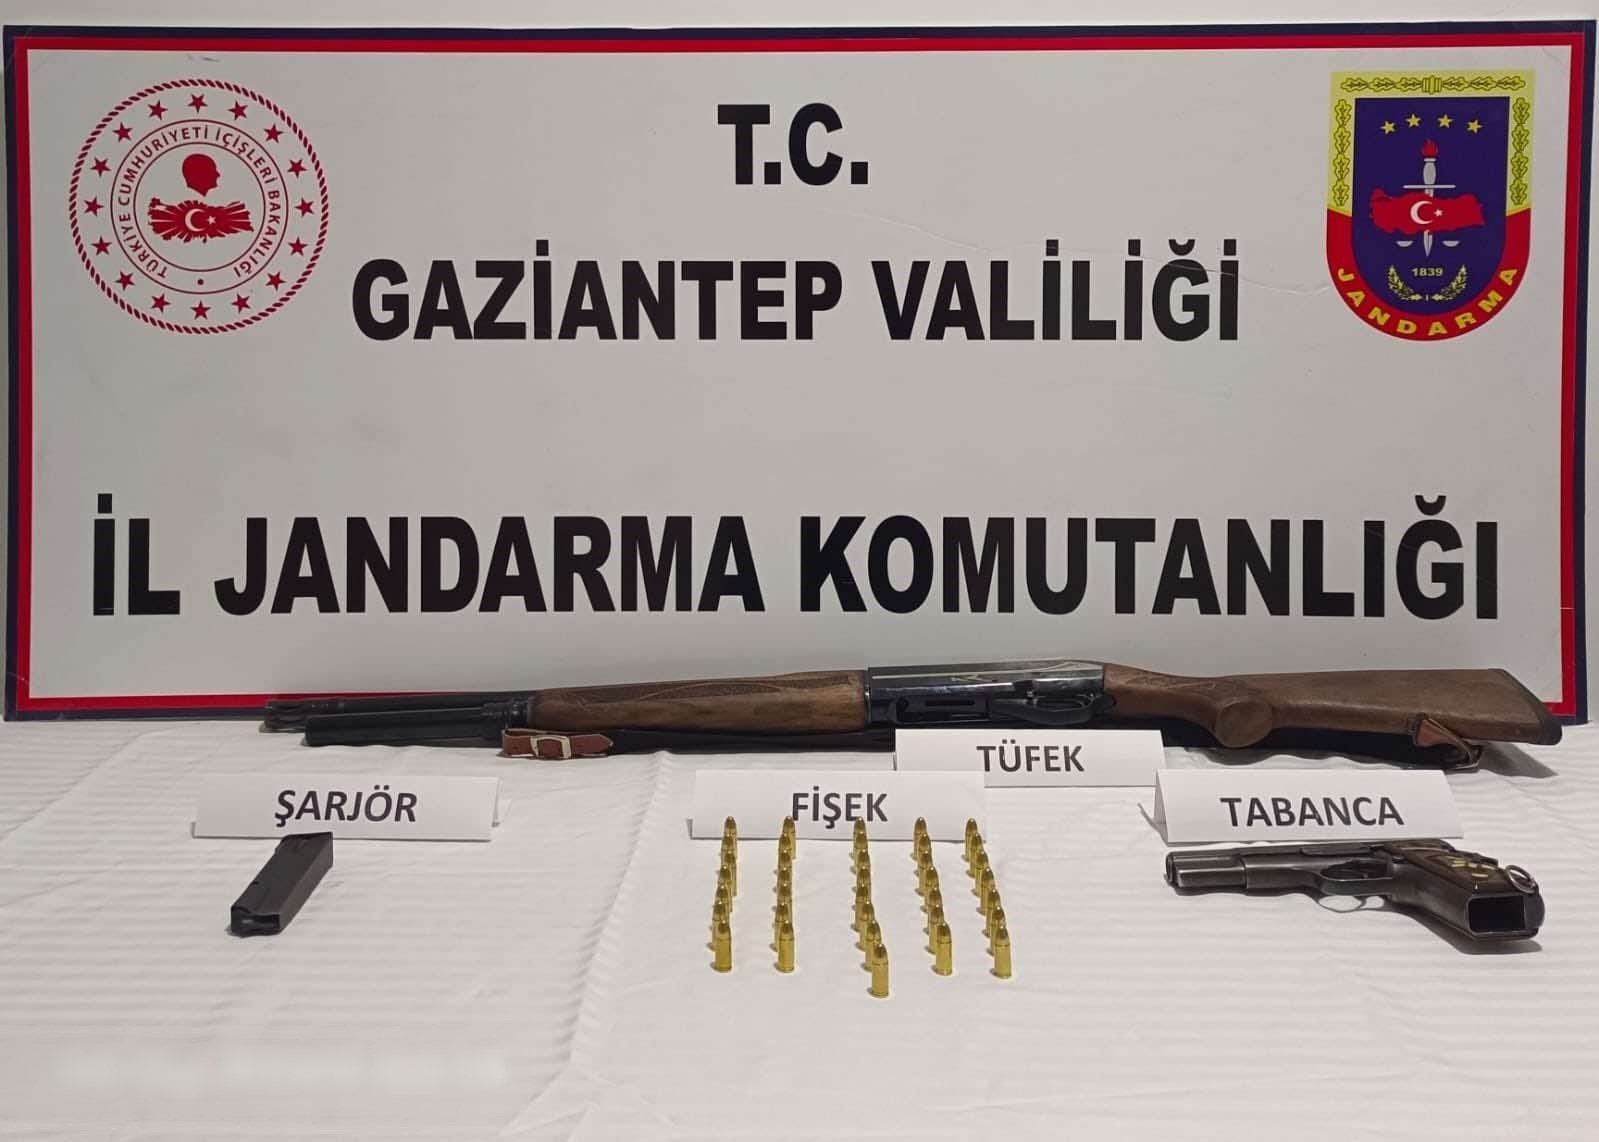 Gaziantep’te kaçakçılık ve uyuşturucu operasyonları: 6 şahıs tutuklandı
